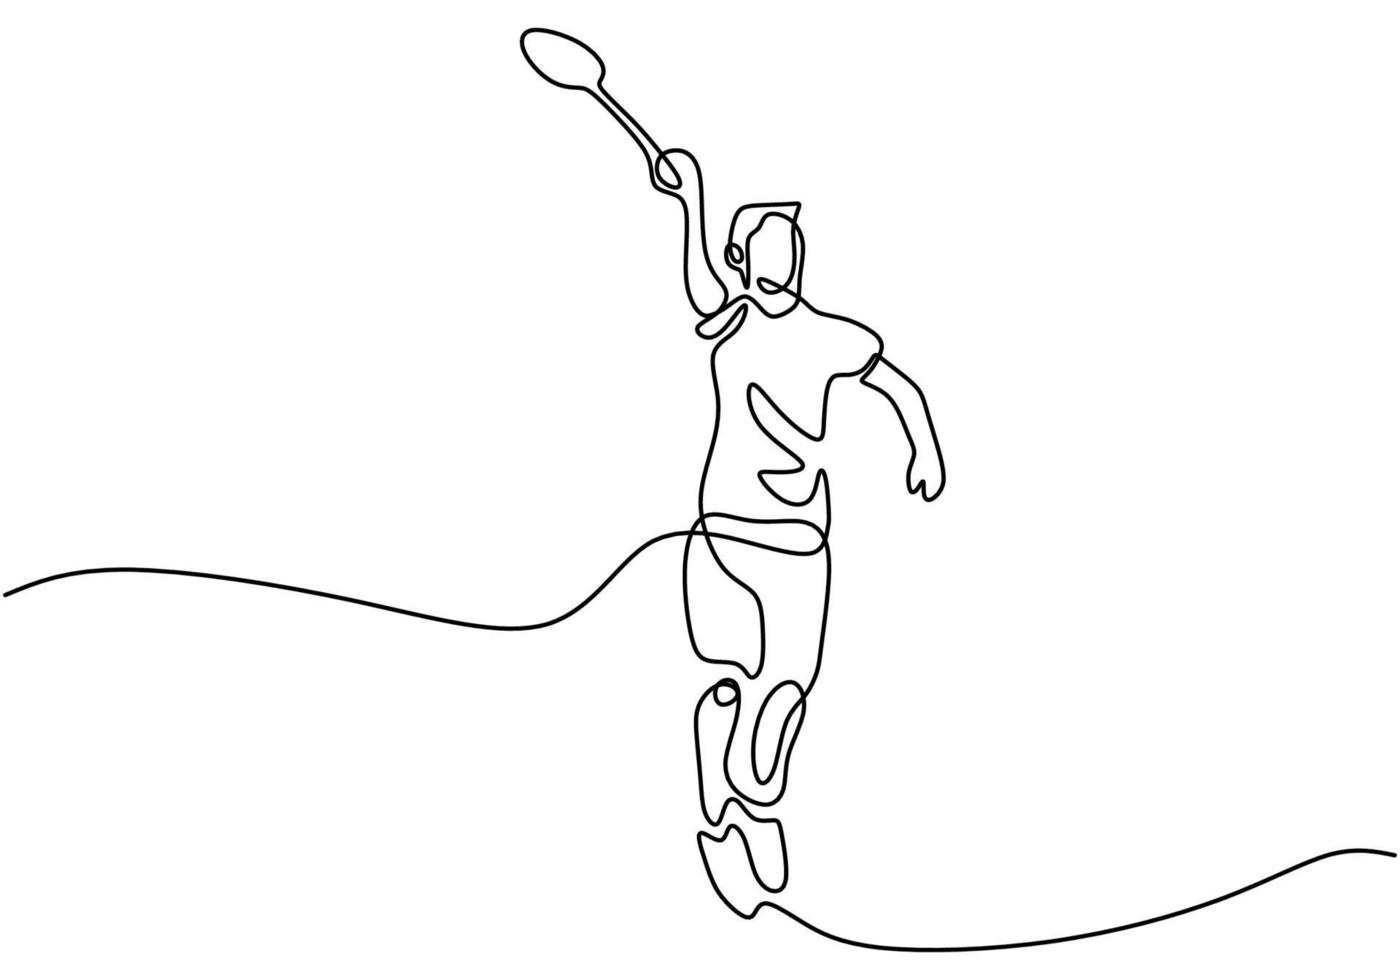 dibujo de línea continua del hombre jugando al bádminton. personaje que un jugador de bádminton está jugando con una raqueta aislada sobre fondo blanco. concepto de torneo deportivo diseño minimalista. ilustración vectorial vector